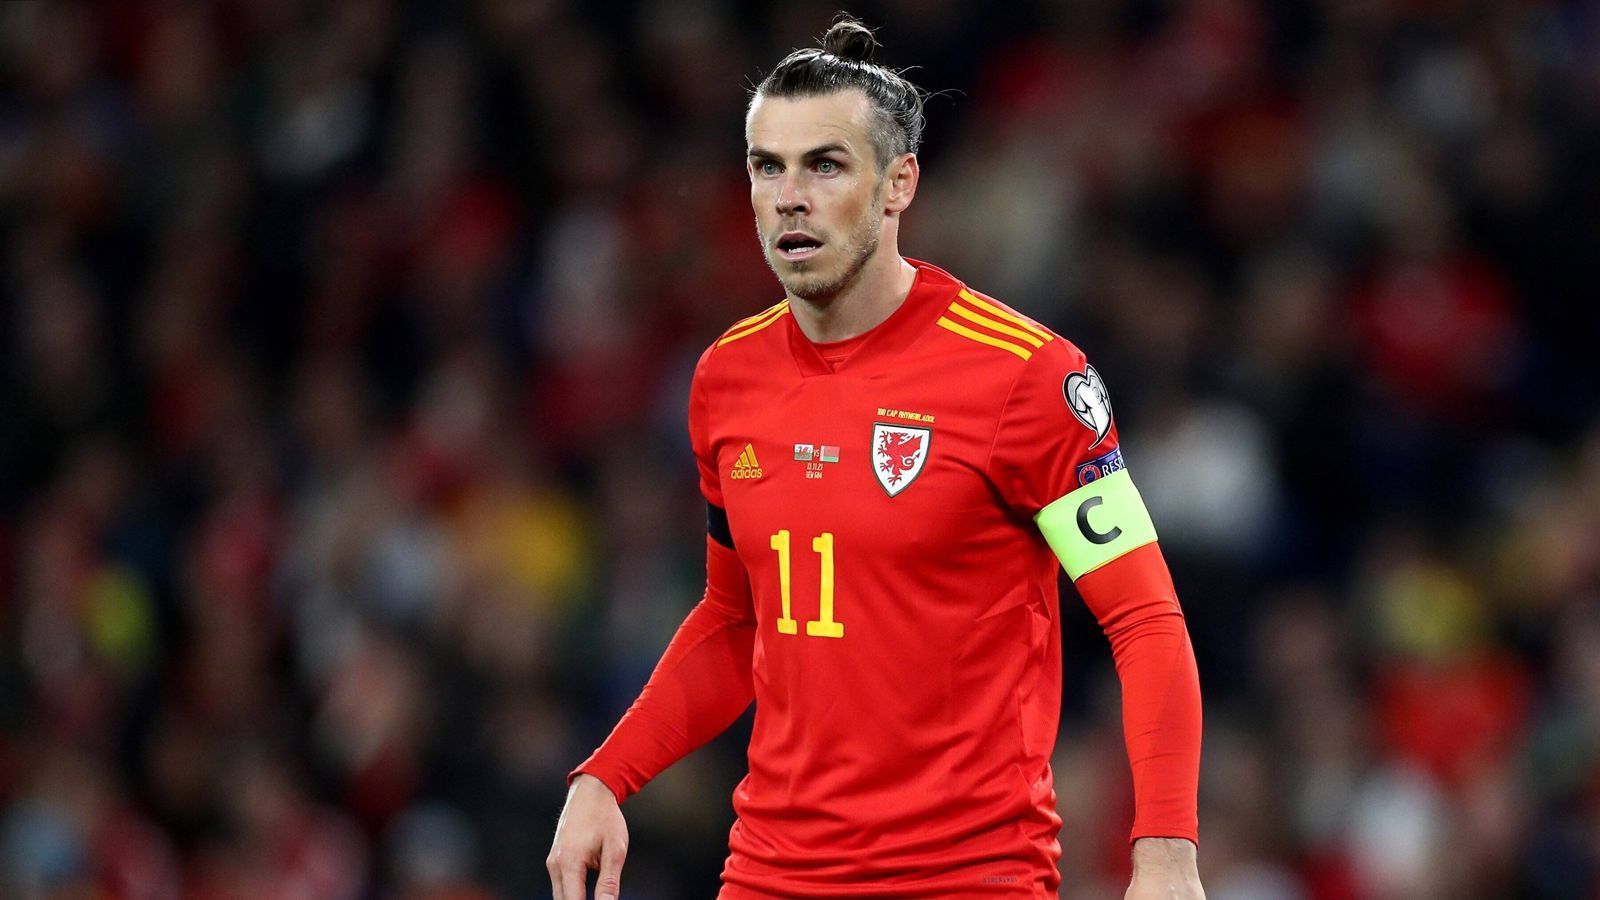 
                <strong>Gareth Bale (Wales)</strong><br>
                Klub: Real MadridLänderspiele: 100Tore: 36 Assists: 21Gegner Halbfinale/Finale: Österreich/Sieger Schottland - Ukraine
              